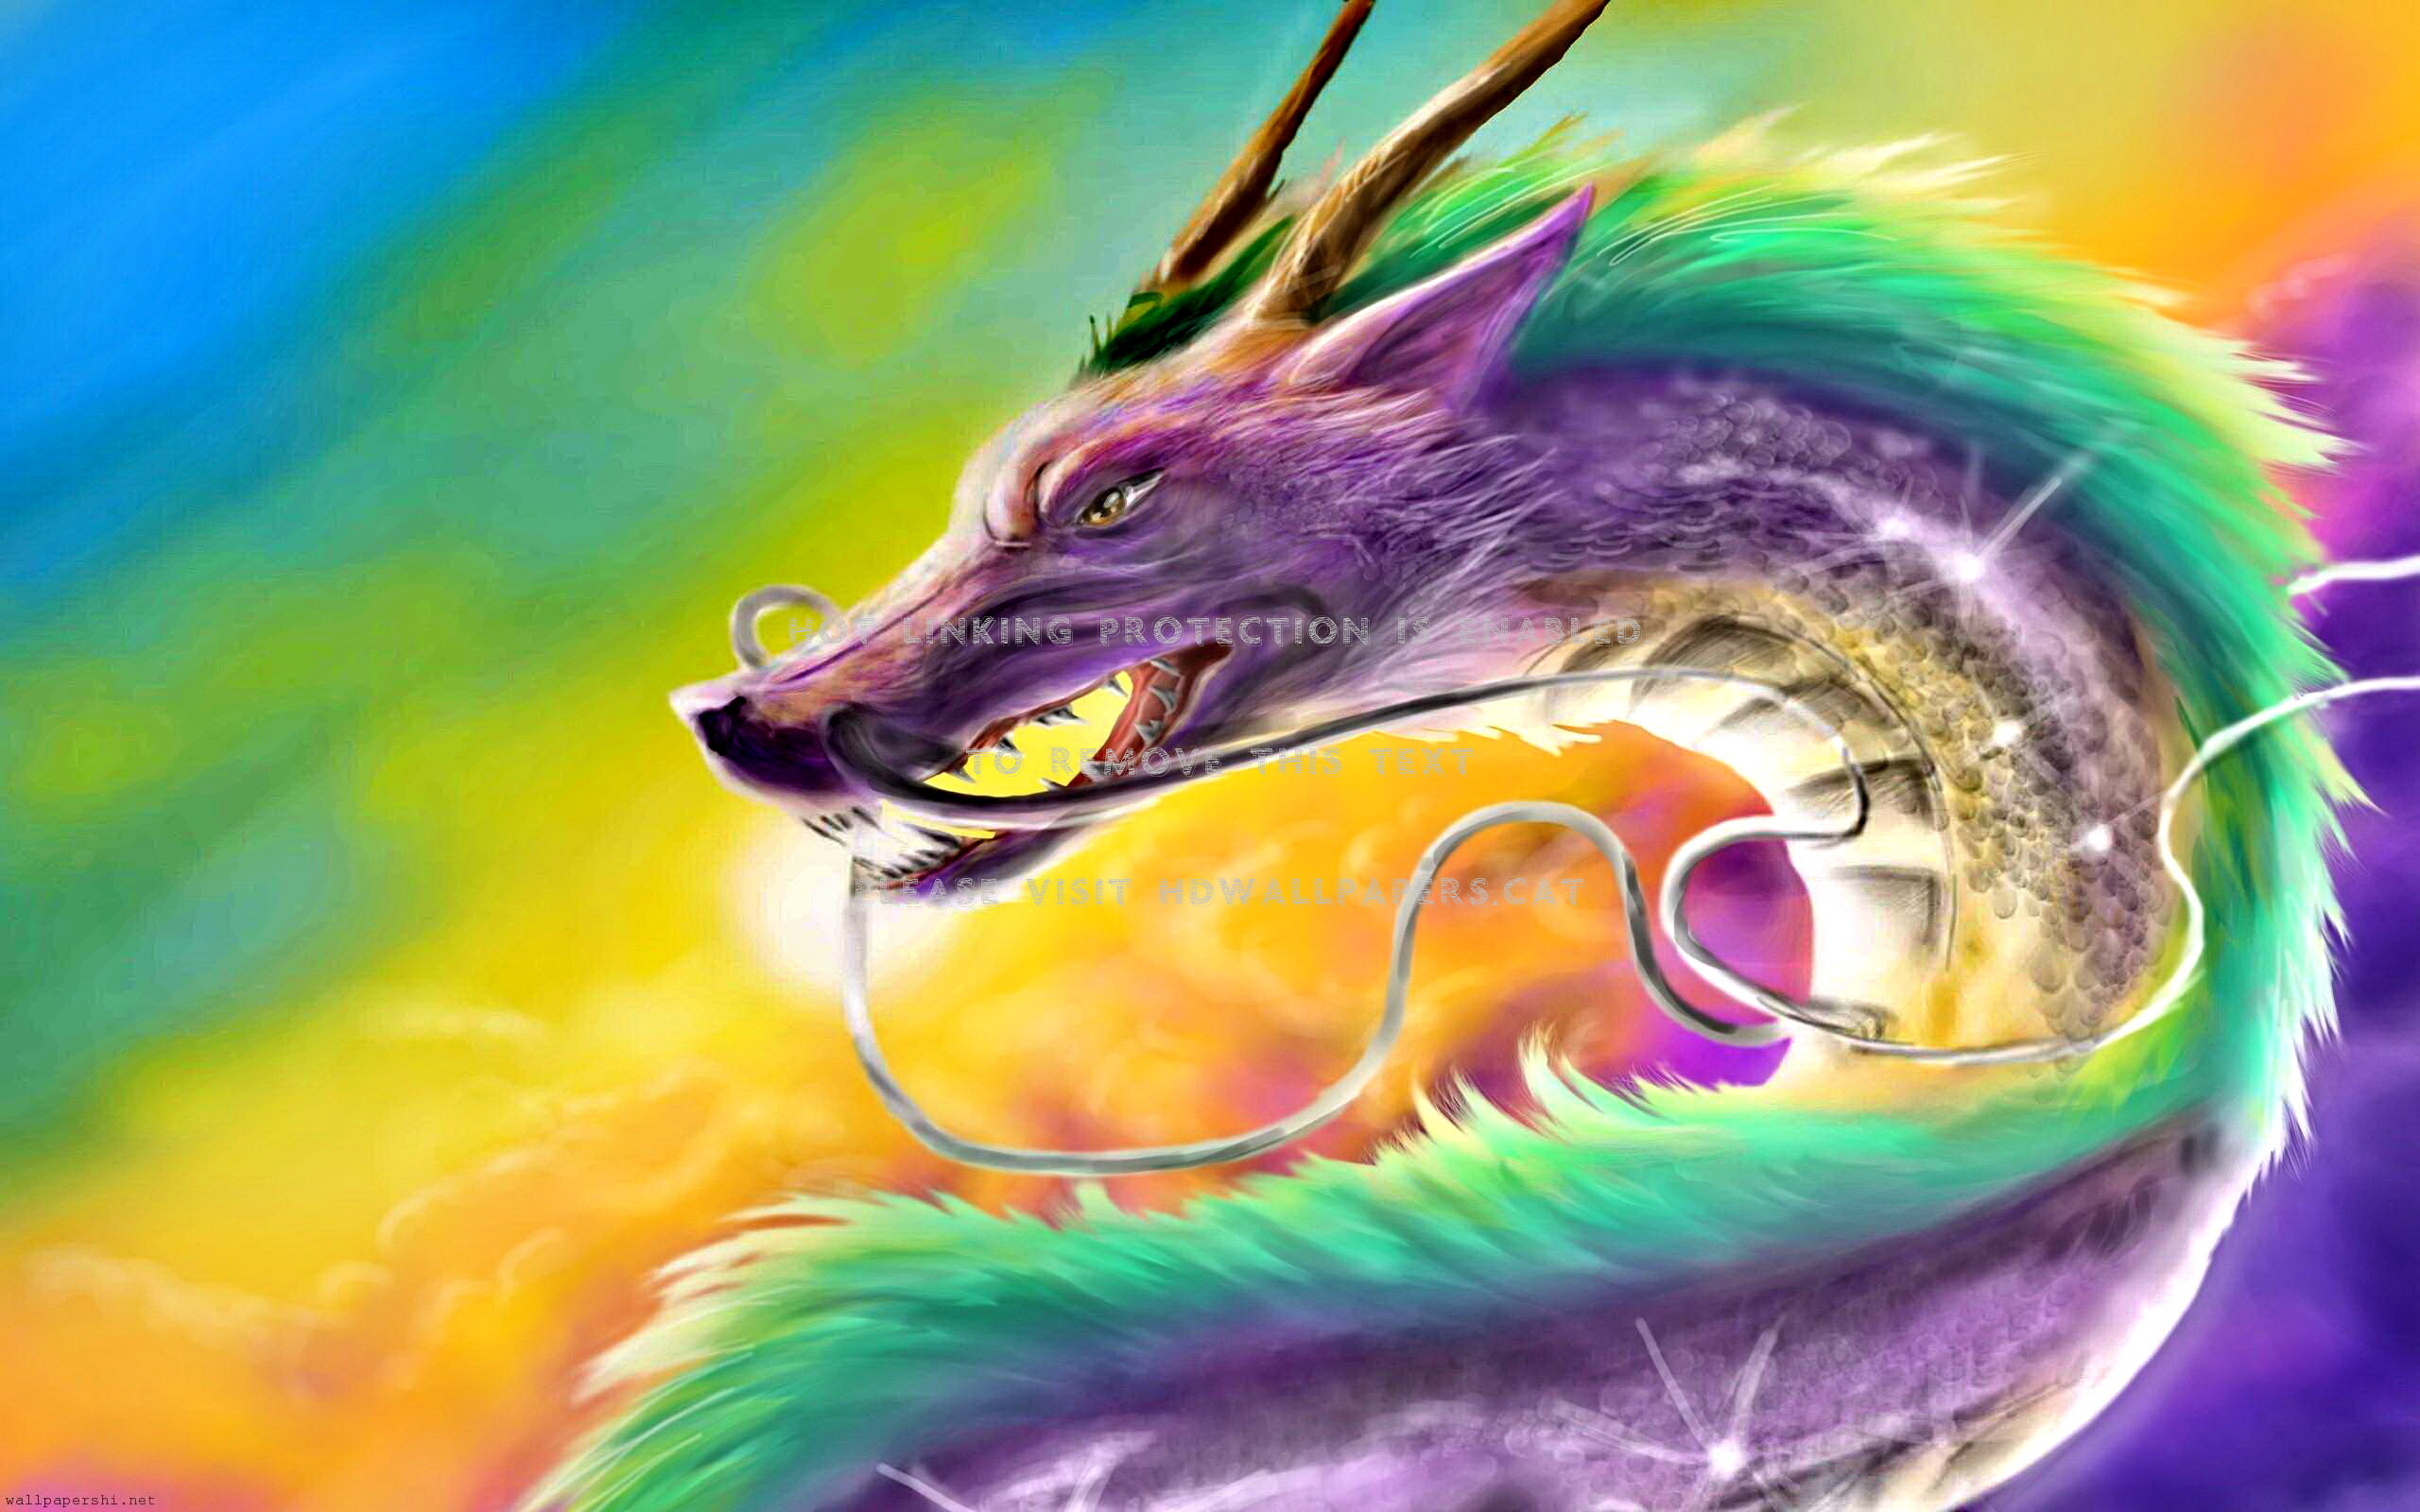 Chinese Dragon Colorful Fantasy Abstract - Dragon - HD Wallpaper 